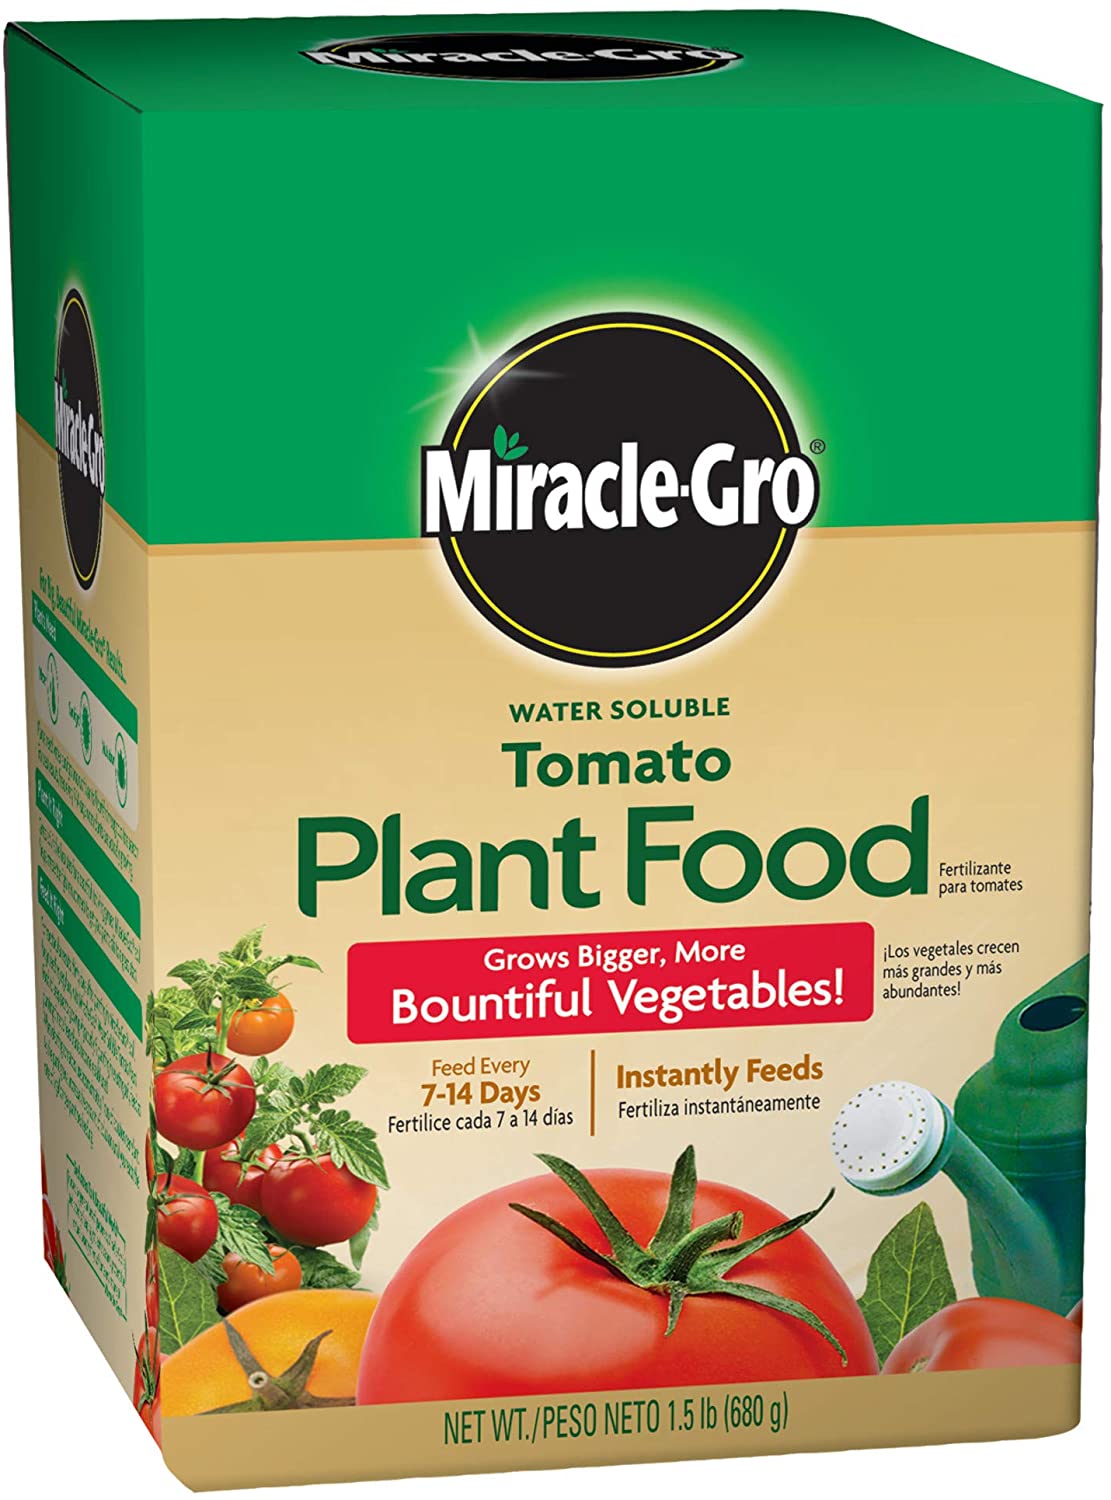 Miracle Gro Tomato Fertilizer 1.5 lb. box - Click Image to Close